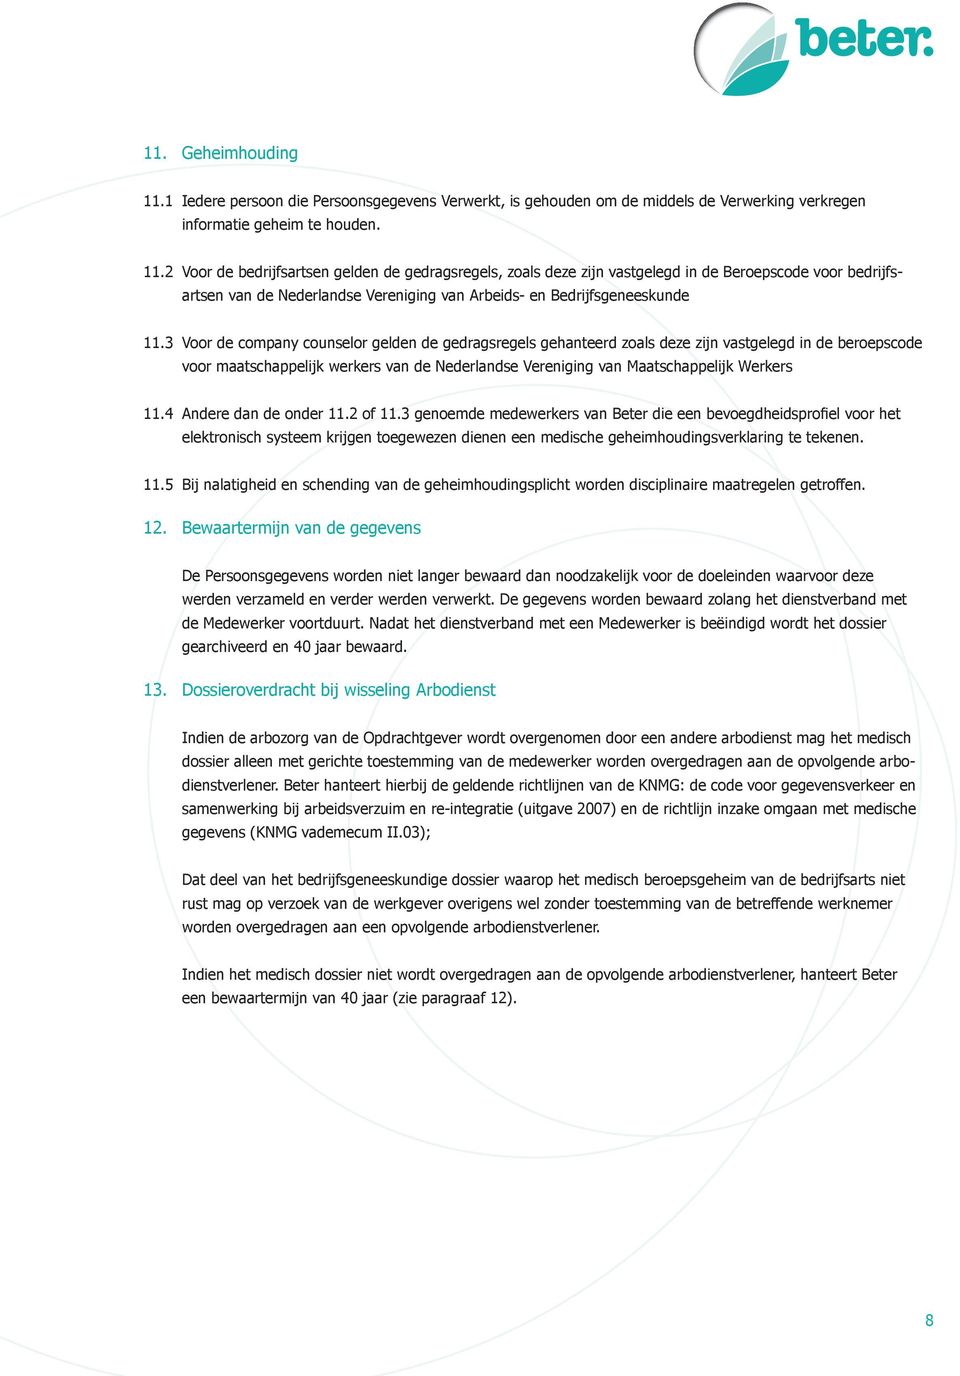 2 Voor de bedrijfsartsen gelden de gedragsregels, zoals deze zijn vastgelegd in de Beroepscode voor bedrijfsartsen van de Nederlandse Vereniging van Arbeids- en Bedrijfsgeneeskunde 11.